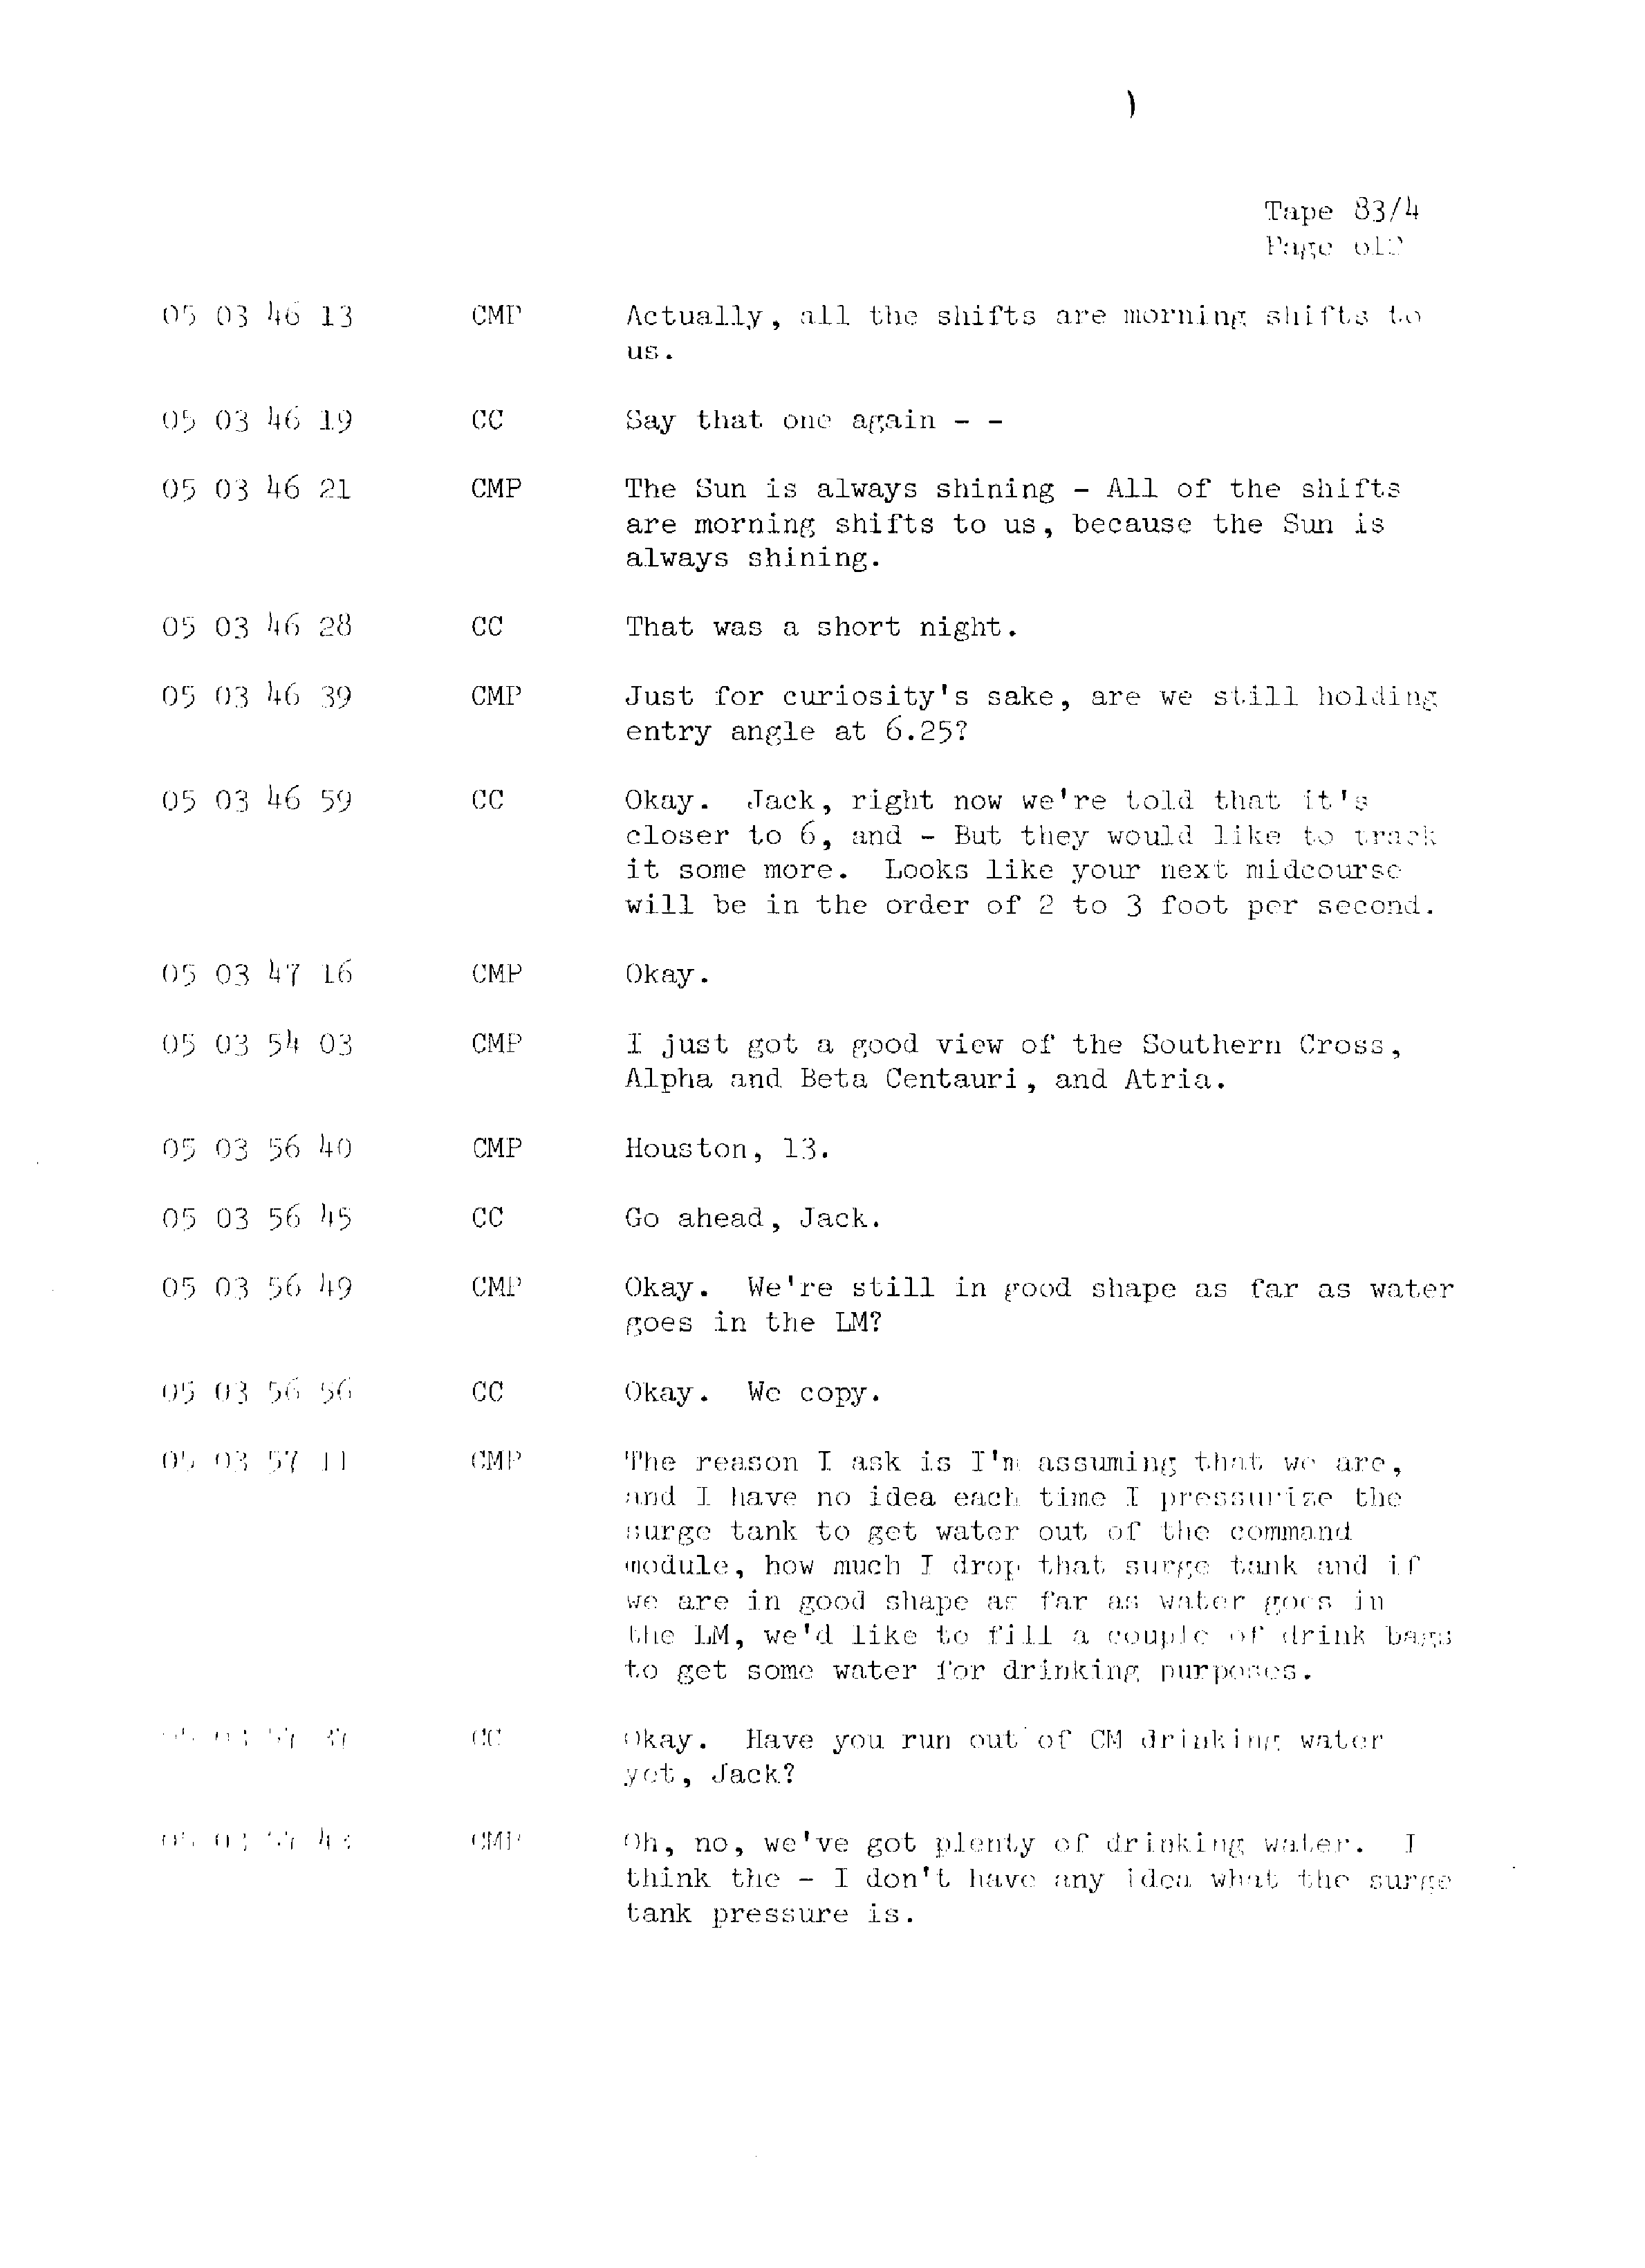 Page 619 of Apollo 13’s original transcript